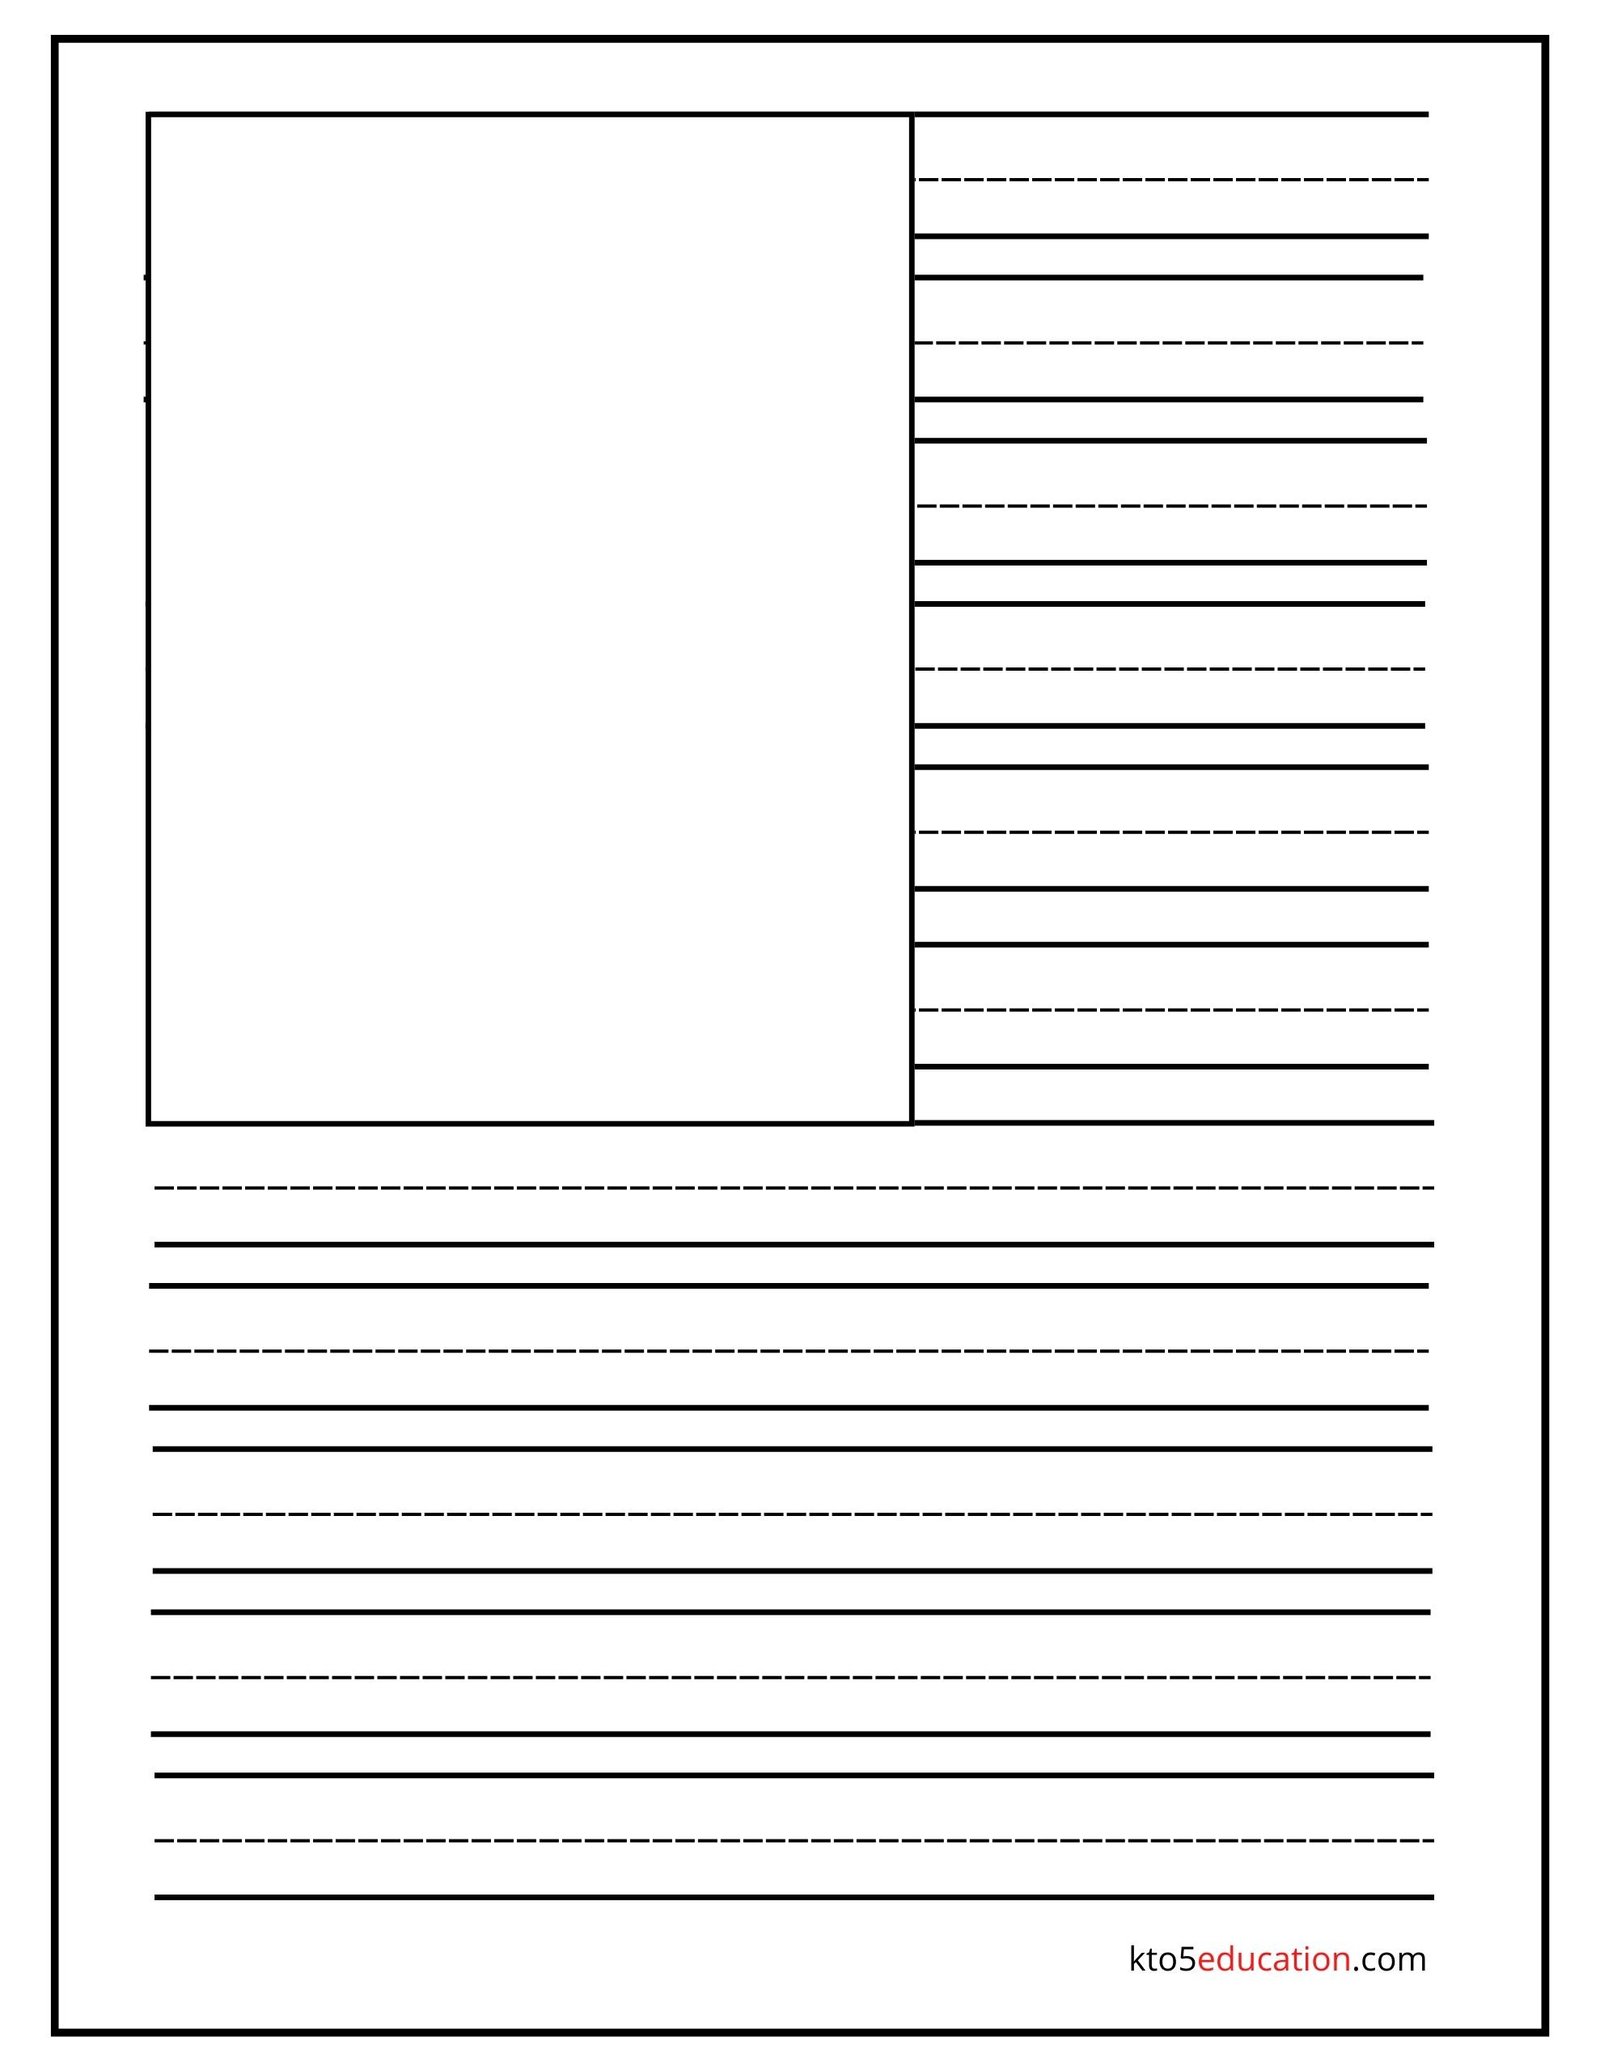 Free Printable Handwriting Practice Paper Worksheet